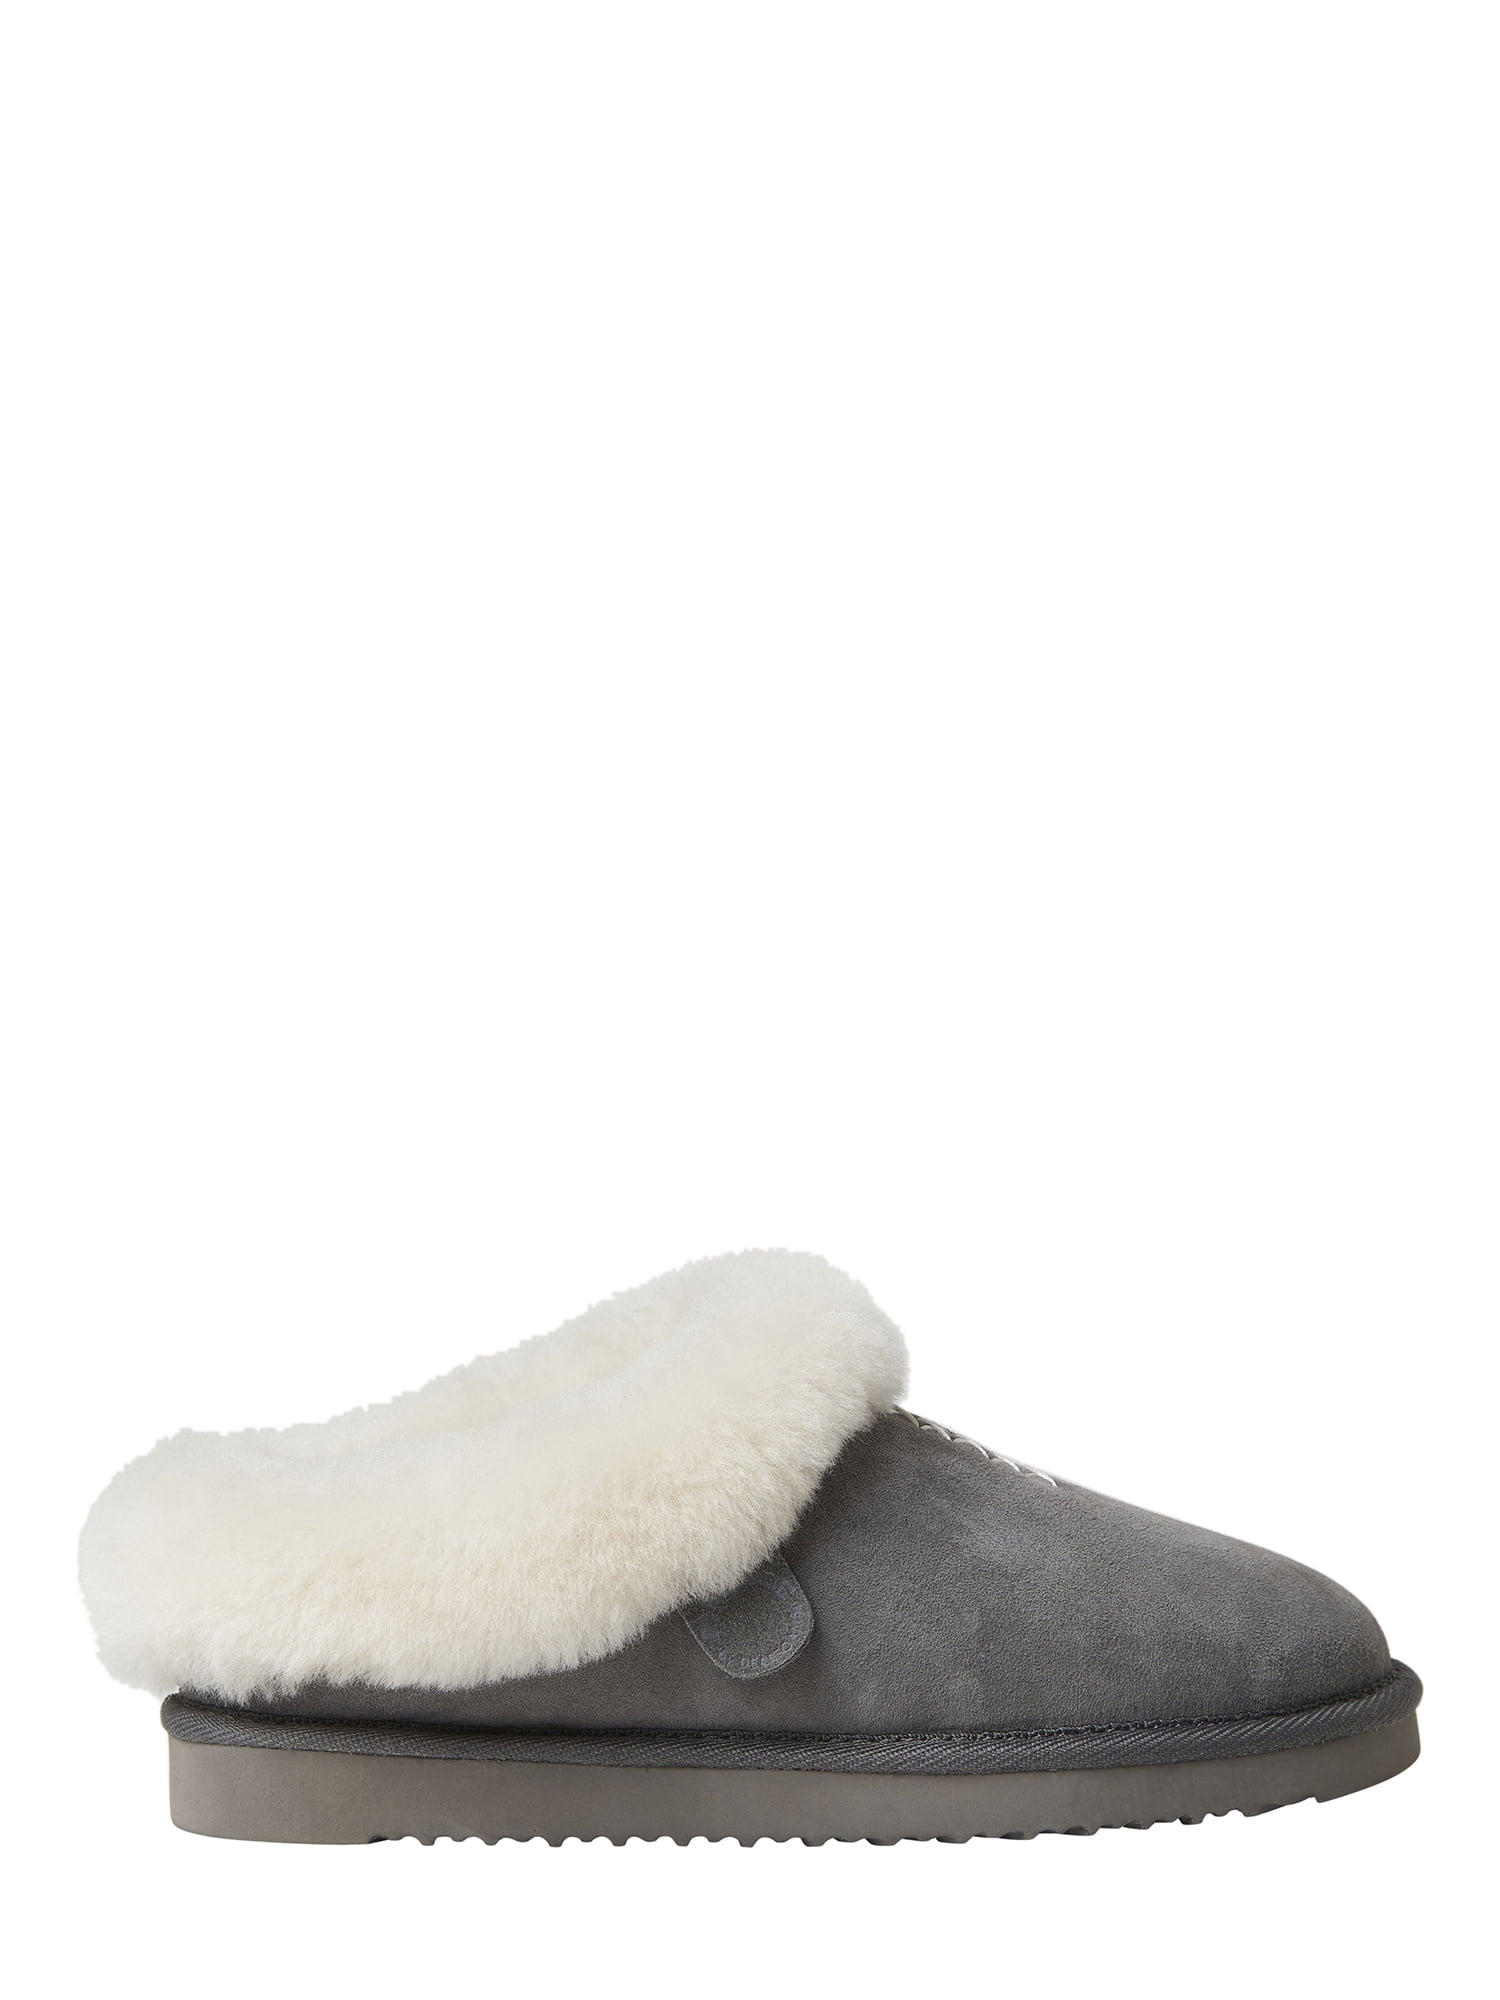 women's dearfoam slippers walmart